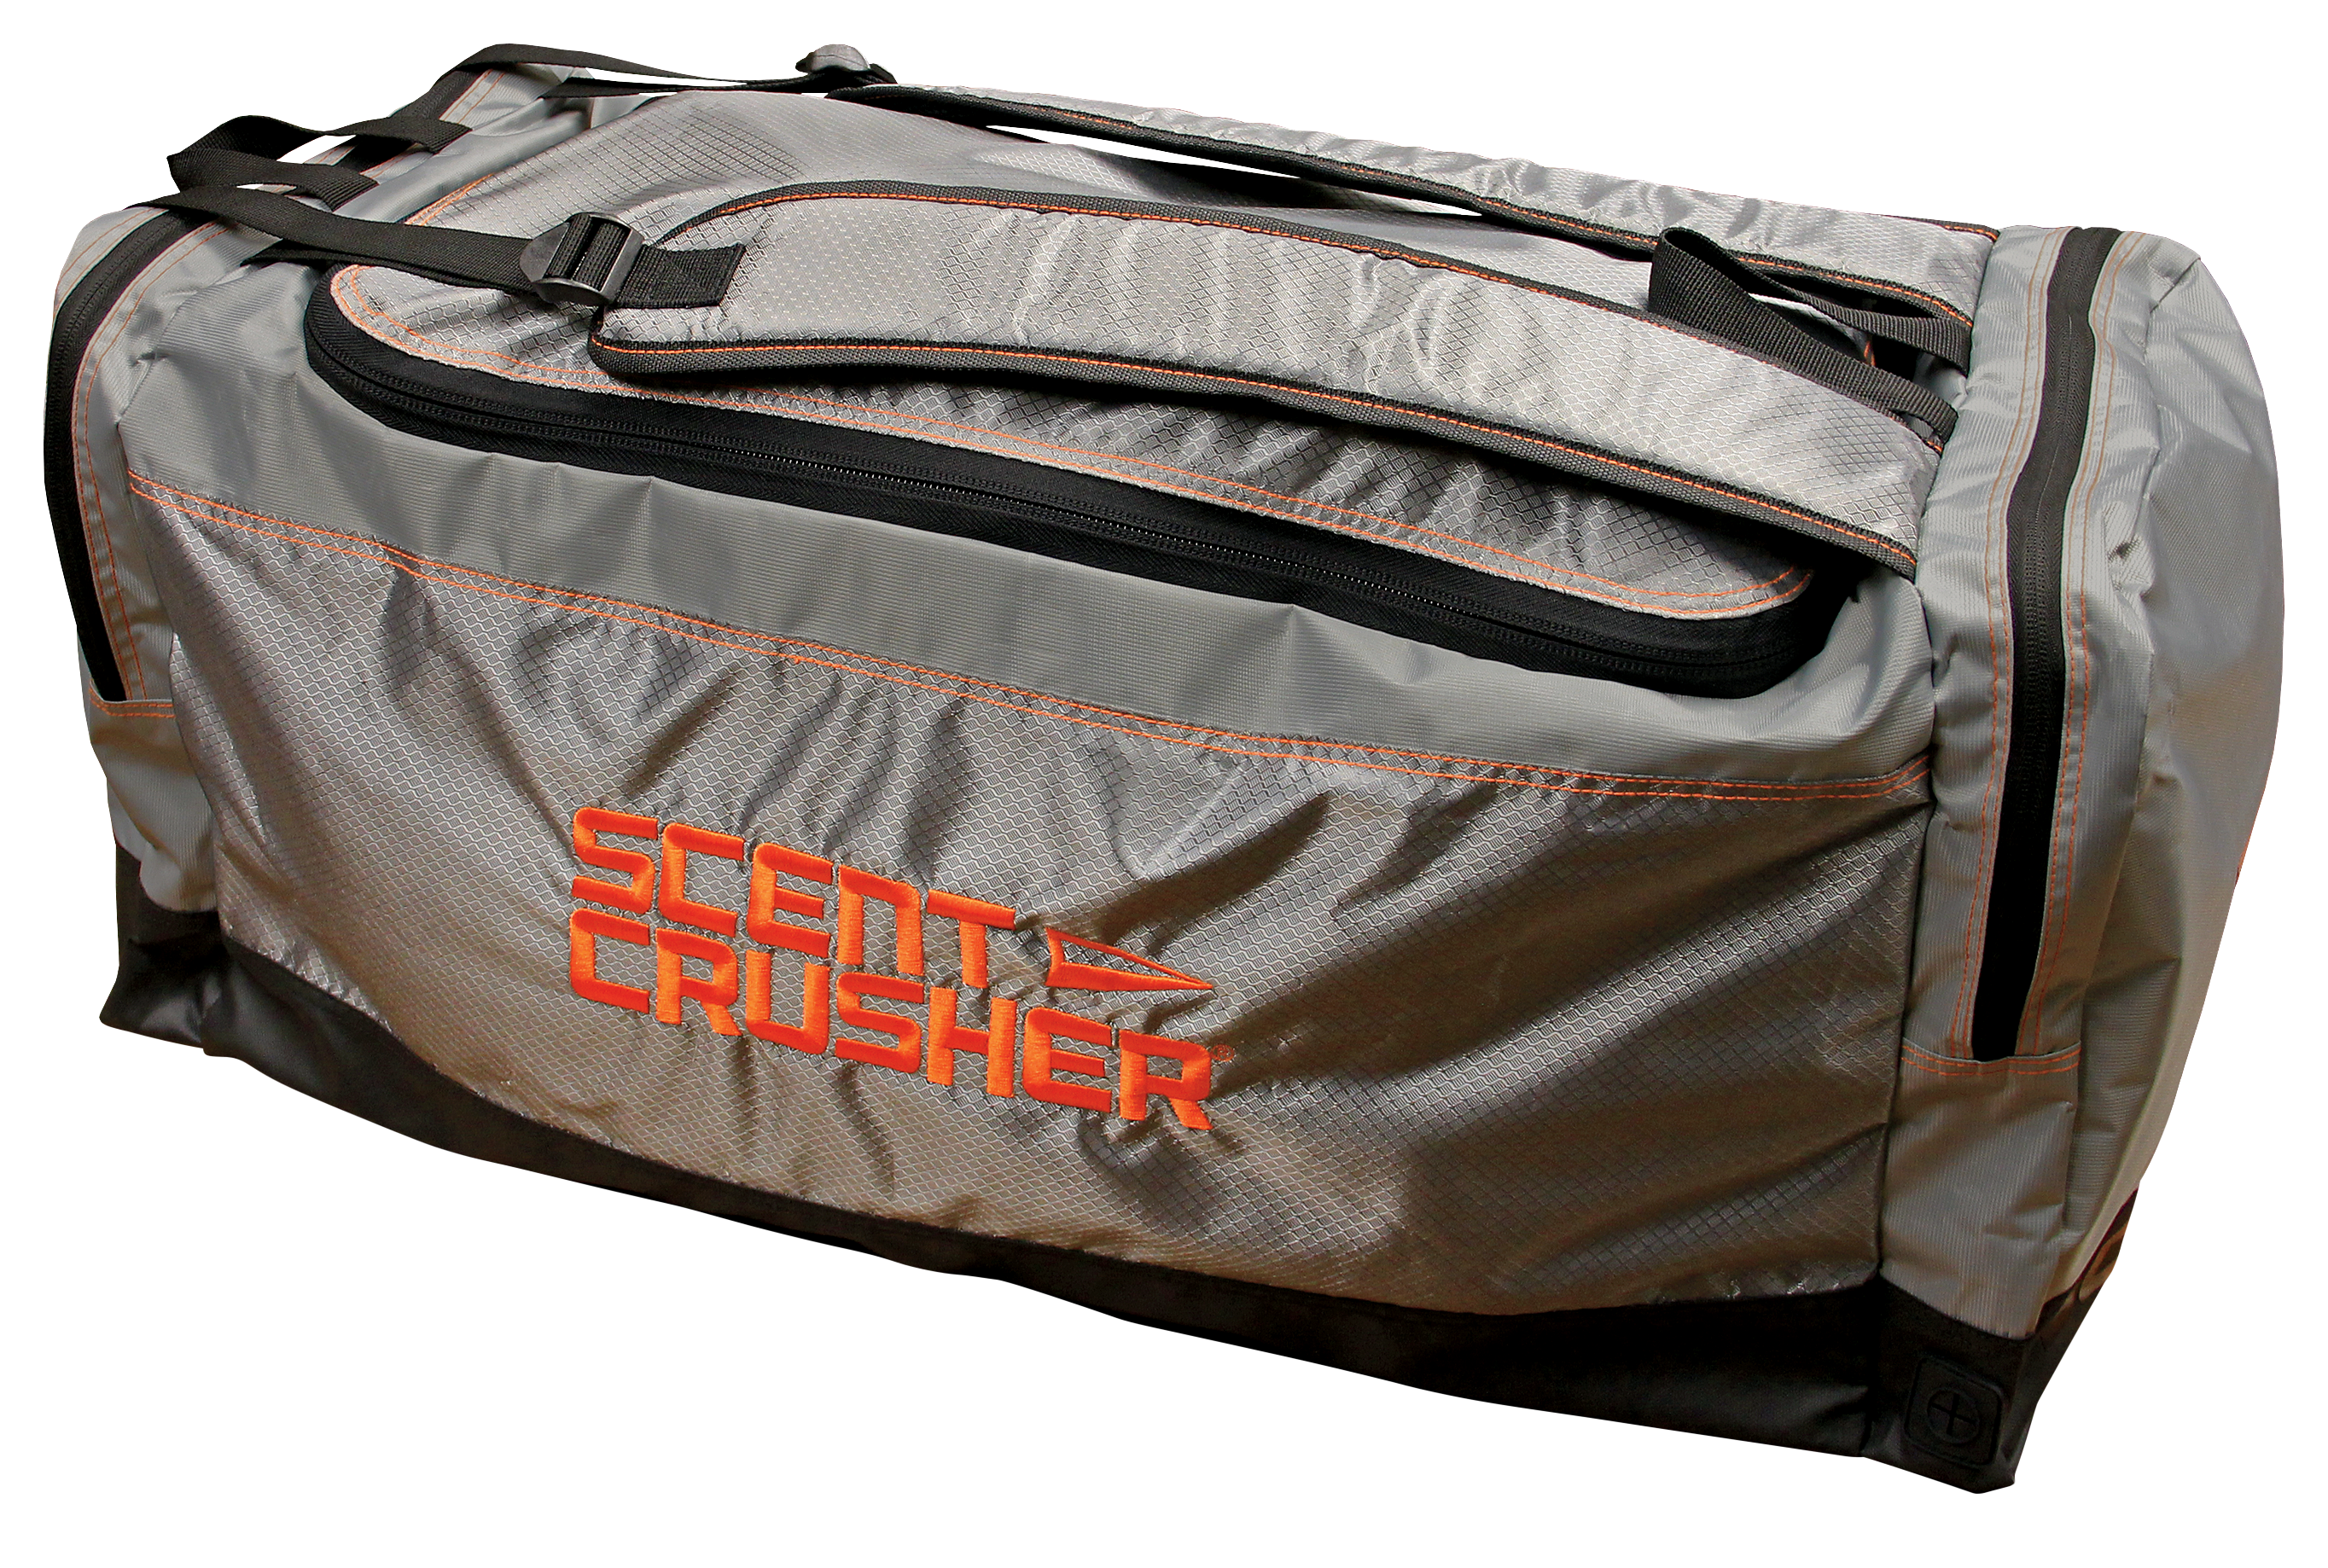 Scent Crusher Standard Gear Bag - Gray/Orange/Black 28in x 10.5in x 12in -  59357-GB